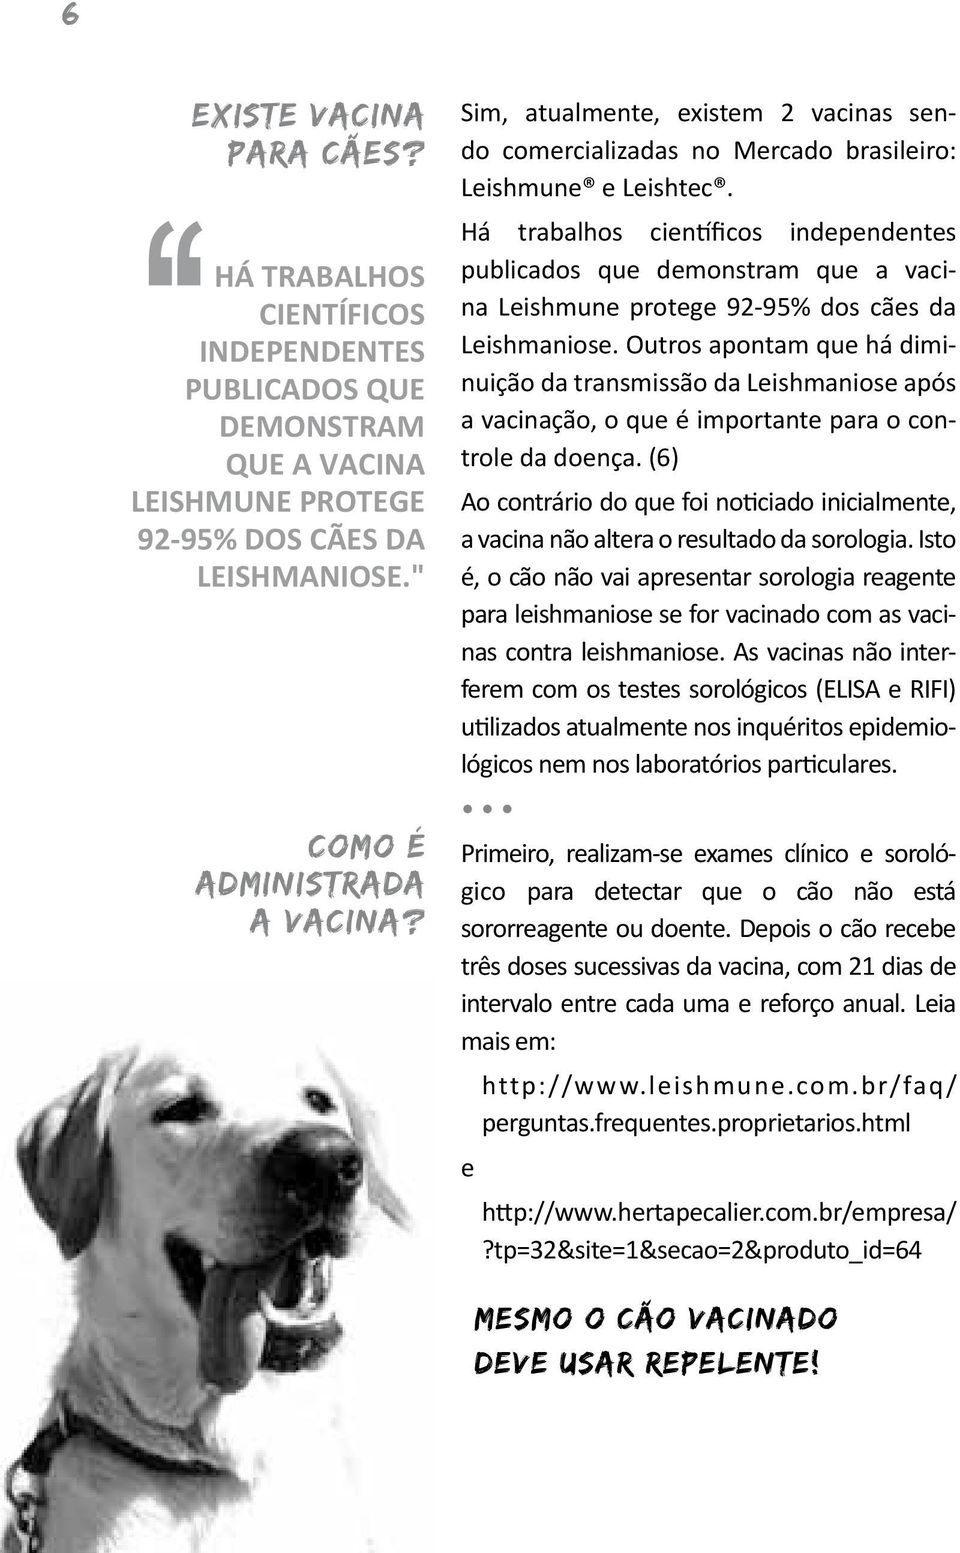 Há trabalhos científicos independentes publicados que demonstram que a vacina Leishmune protege 92-95% dos cães da Leishmaniose.